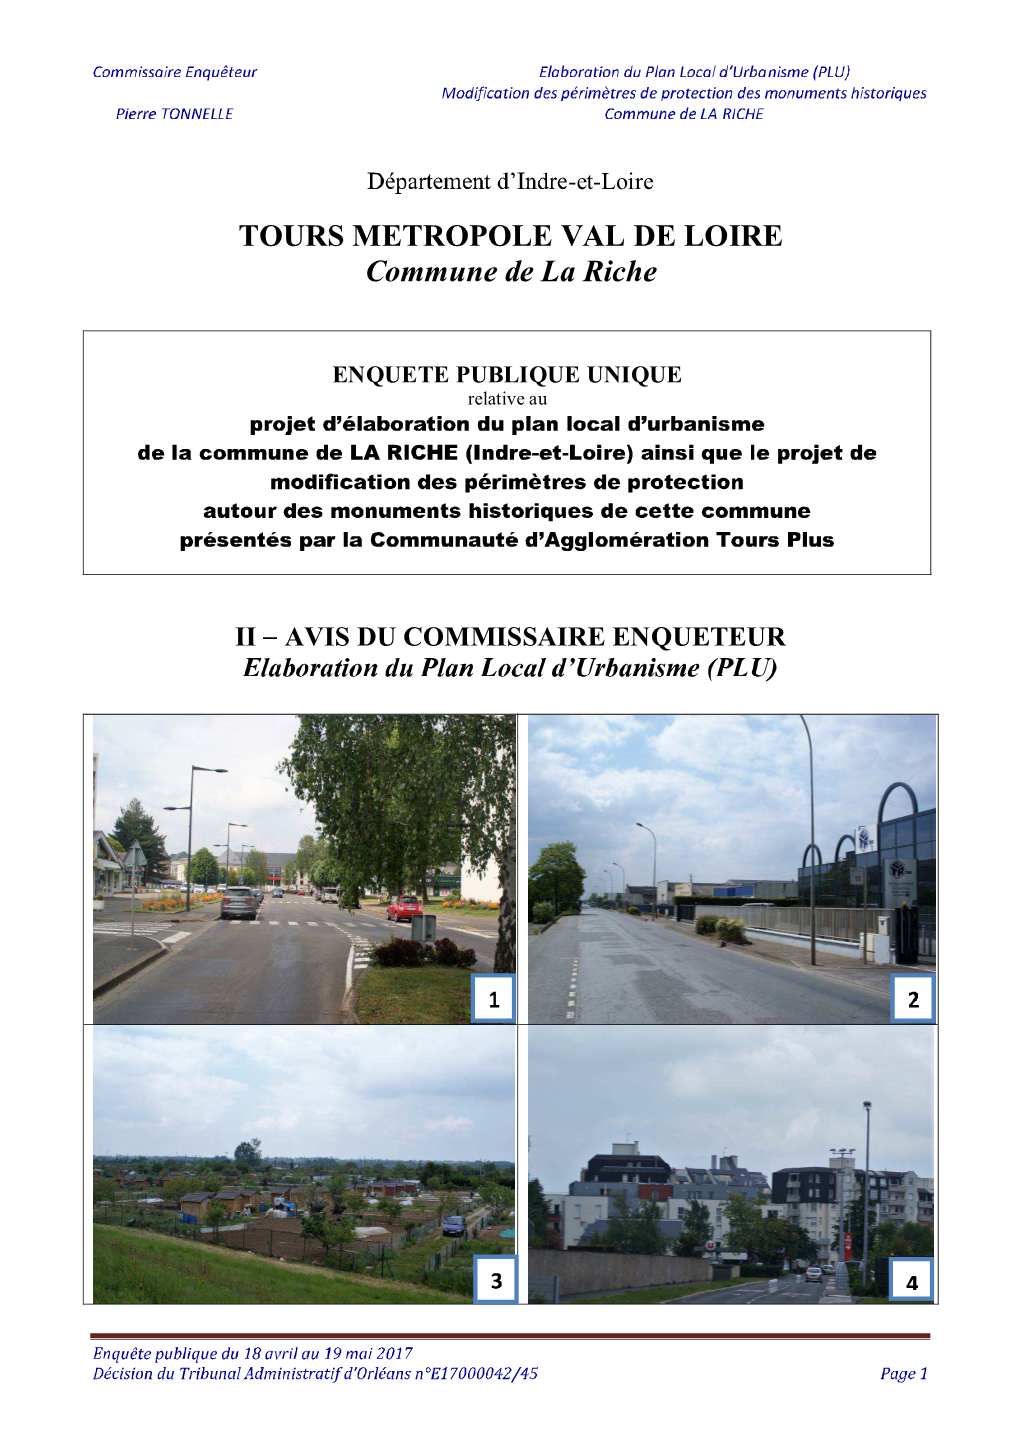 TOURS METROPOLE VAL DE LOIRE Commune De La Riche